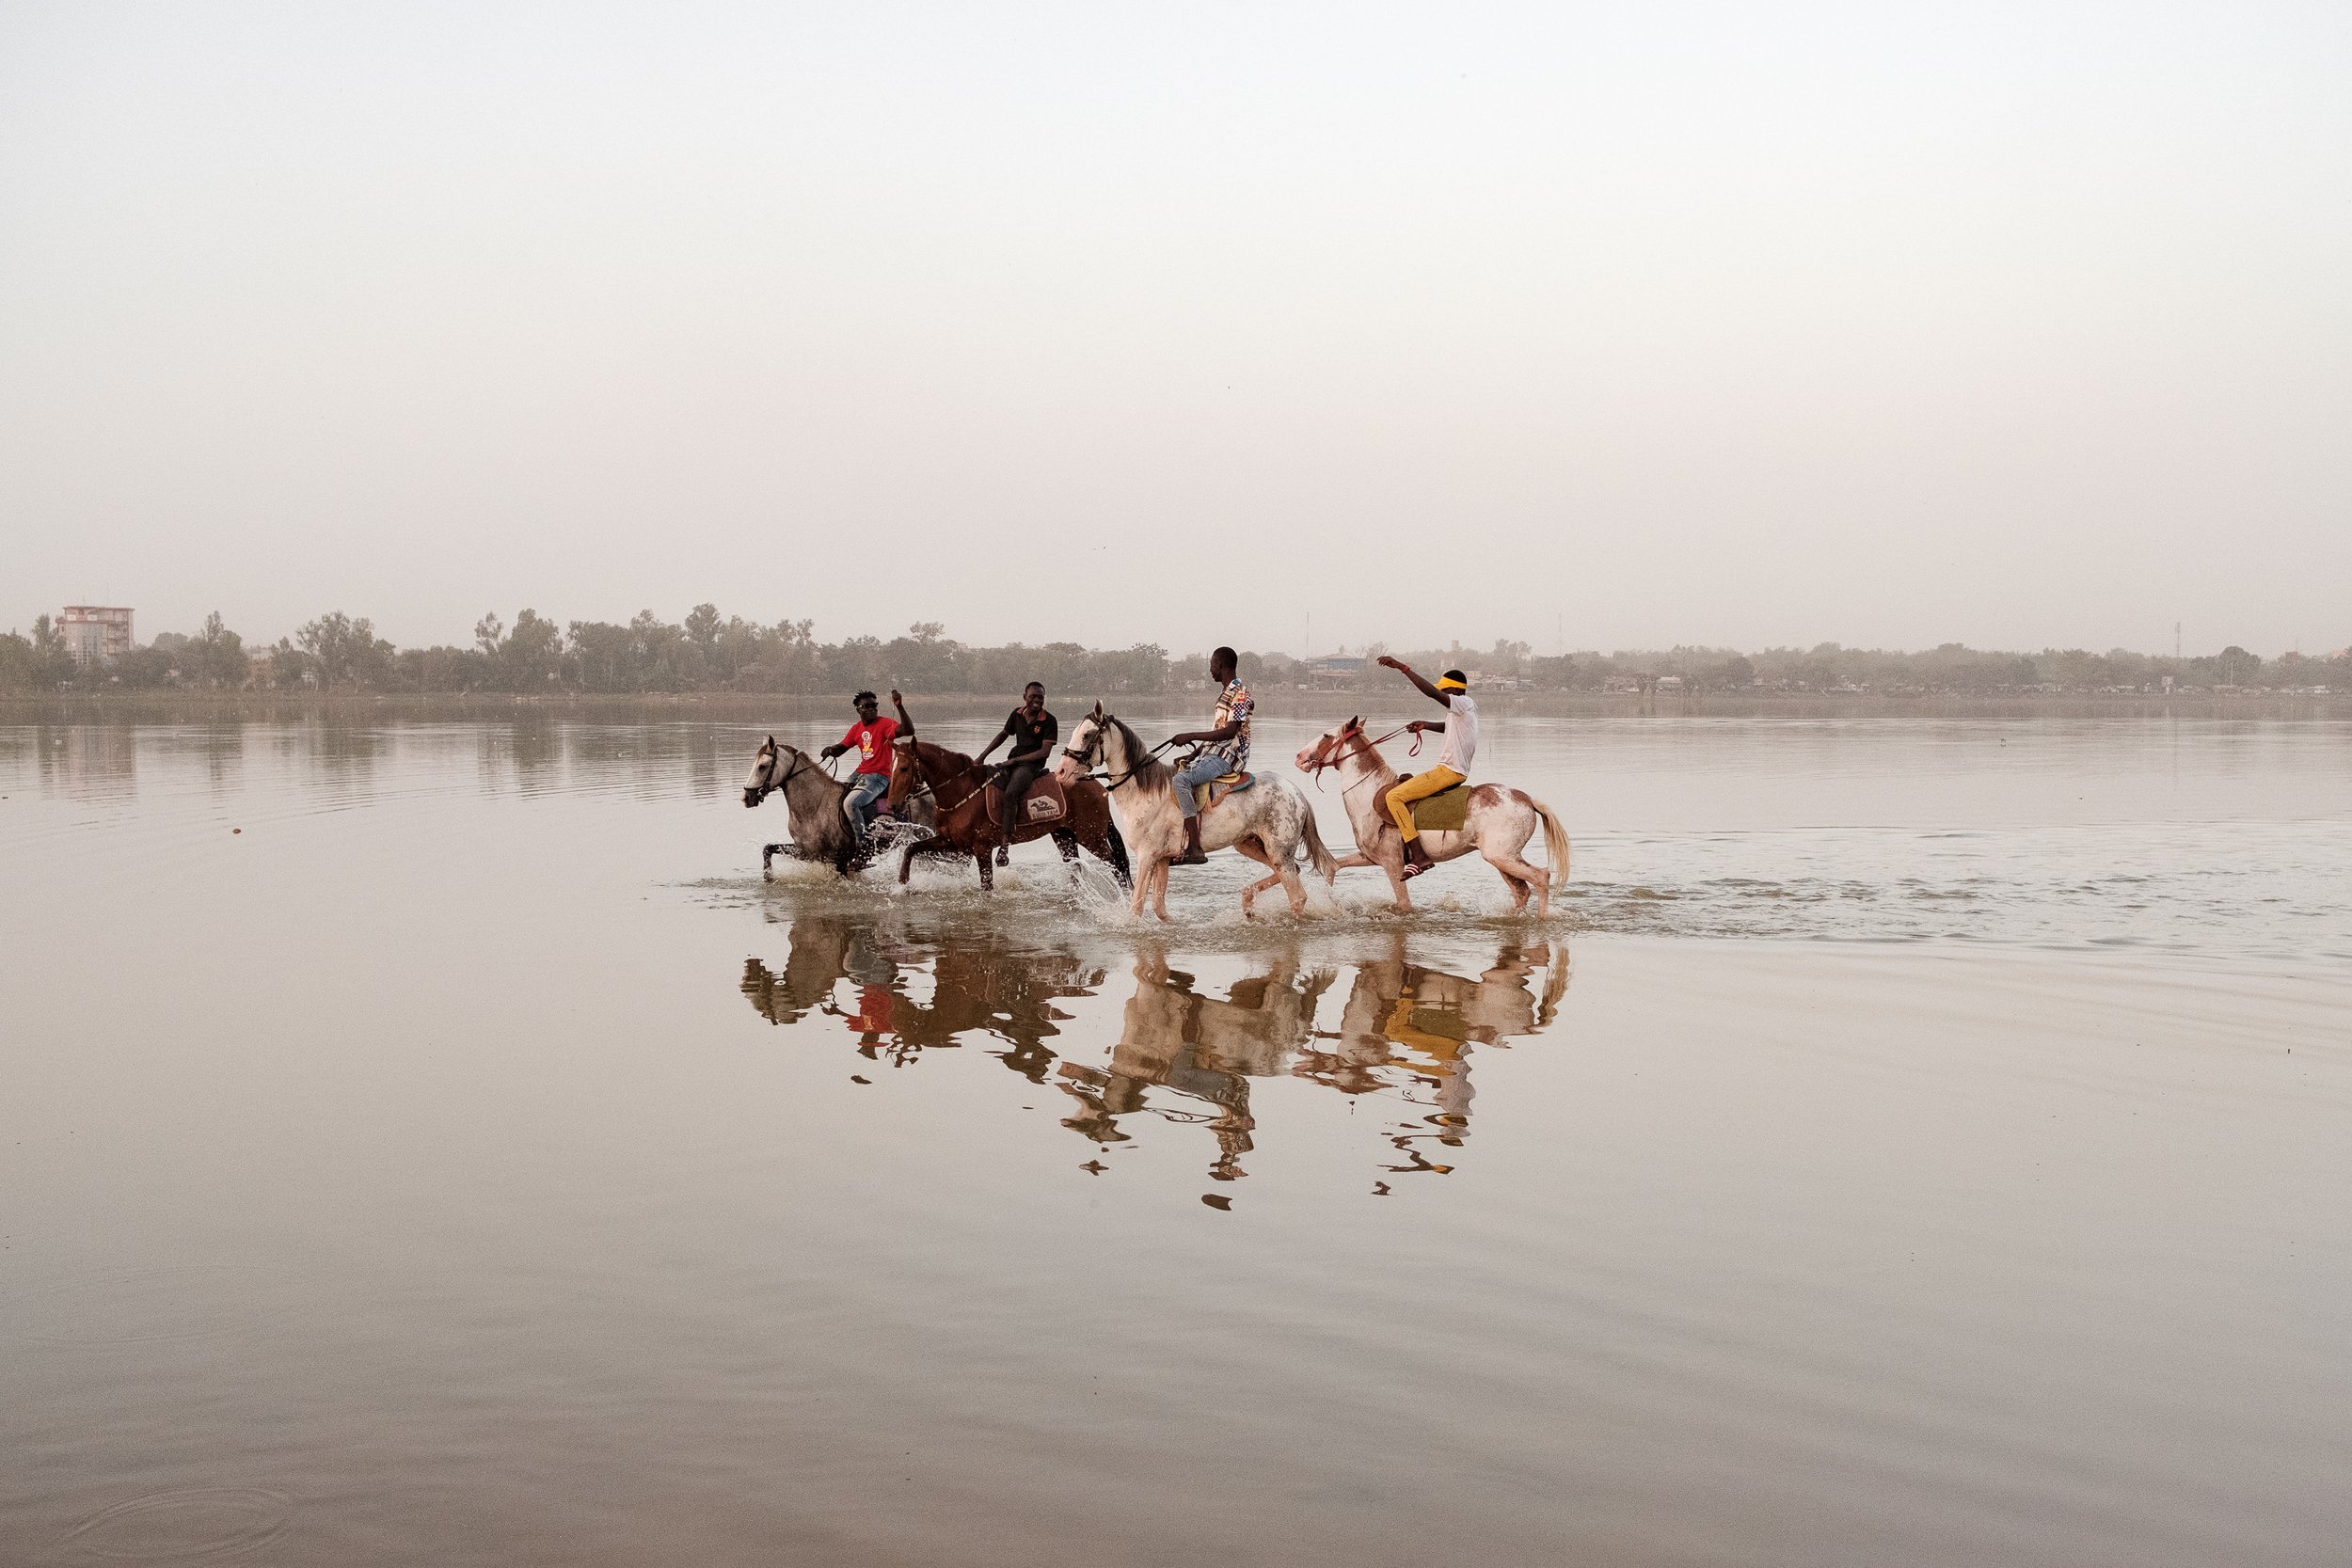  Horse Riders of Ouagadougou 